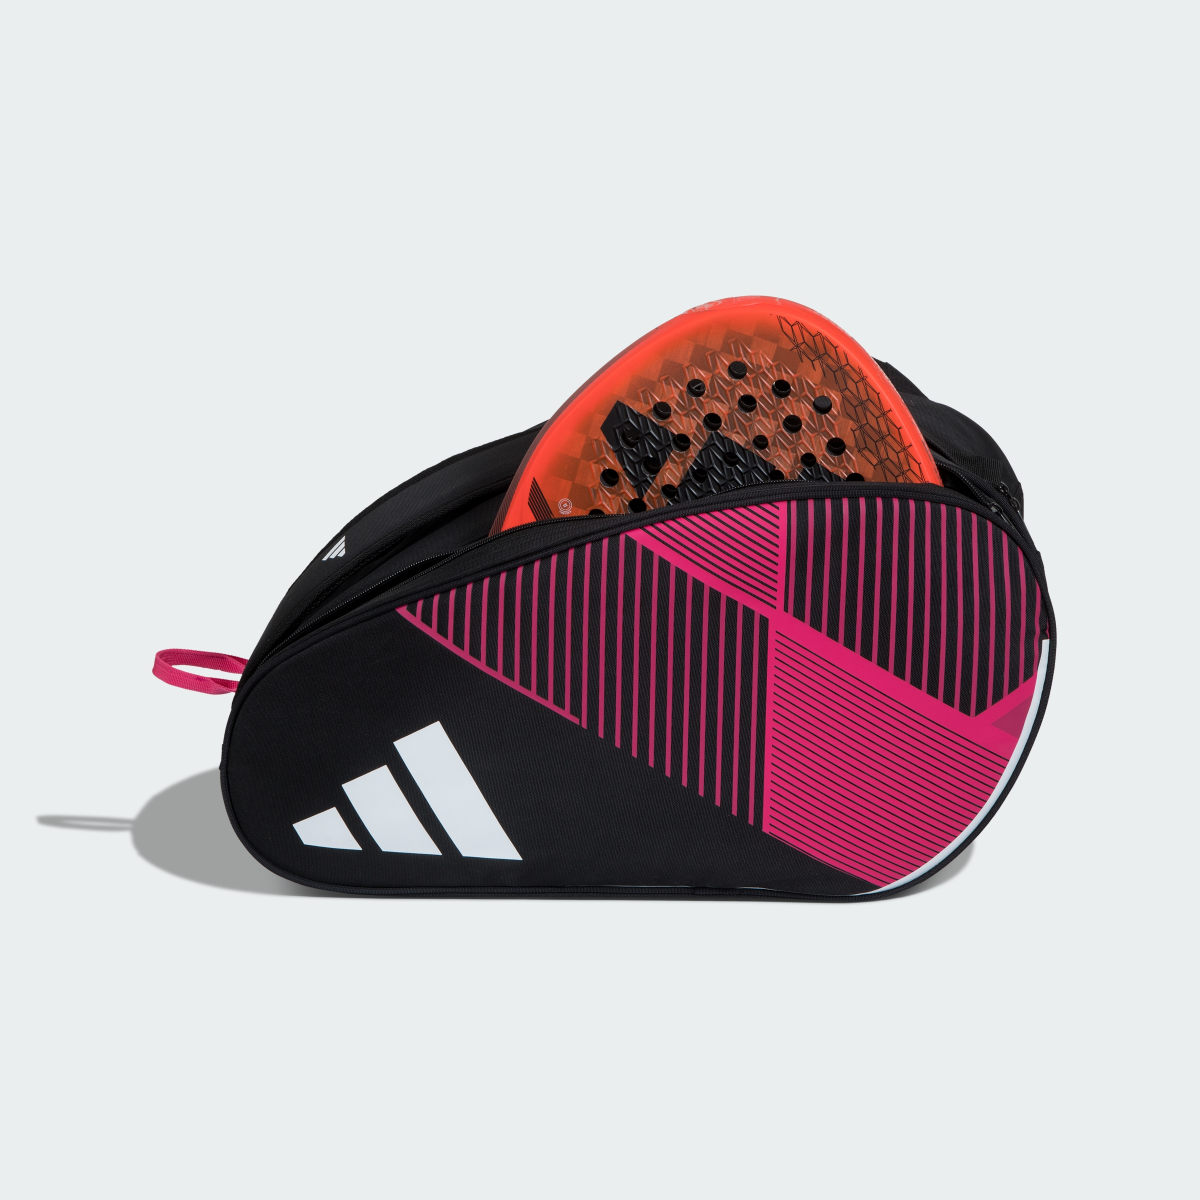 Adidas Racket Bag Control 3.3 Pink. 4